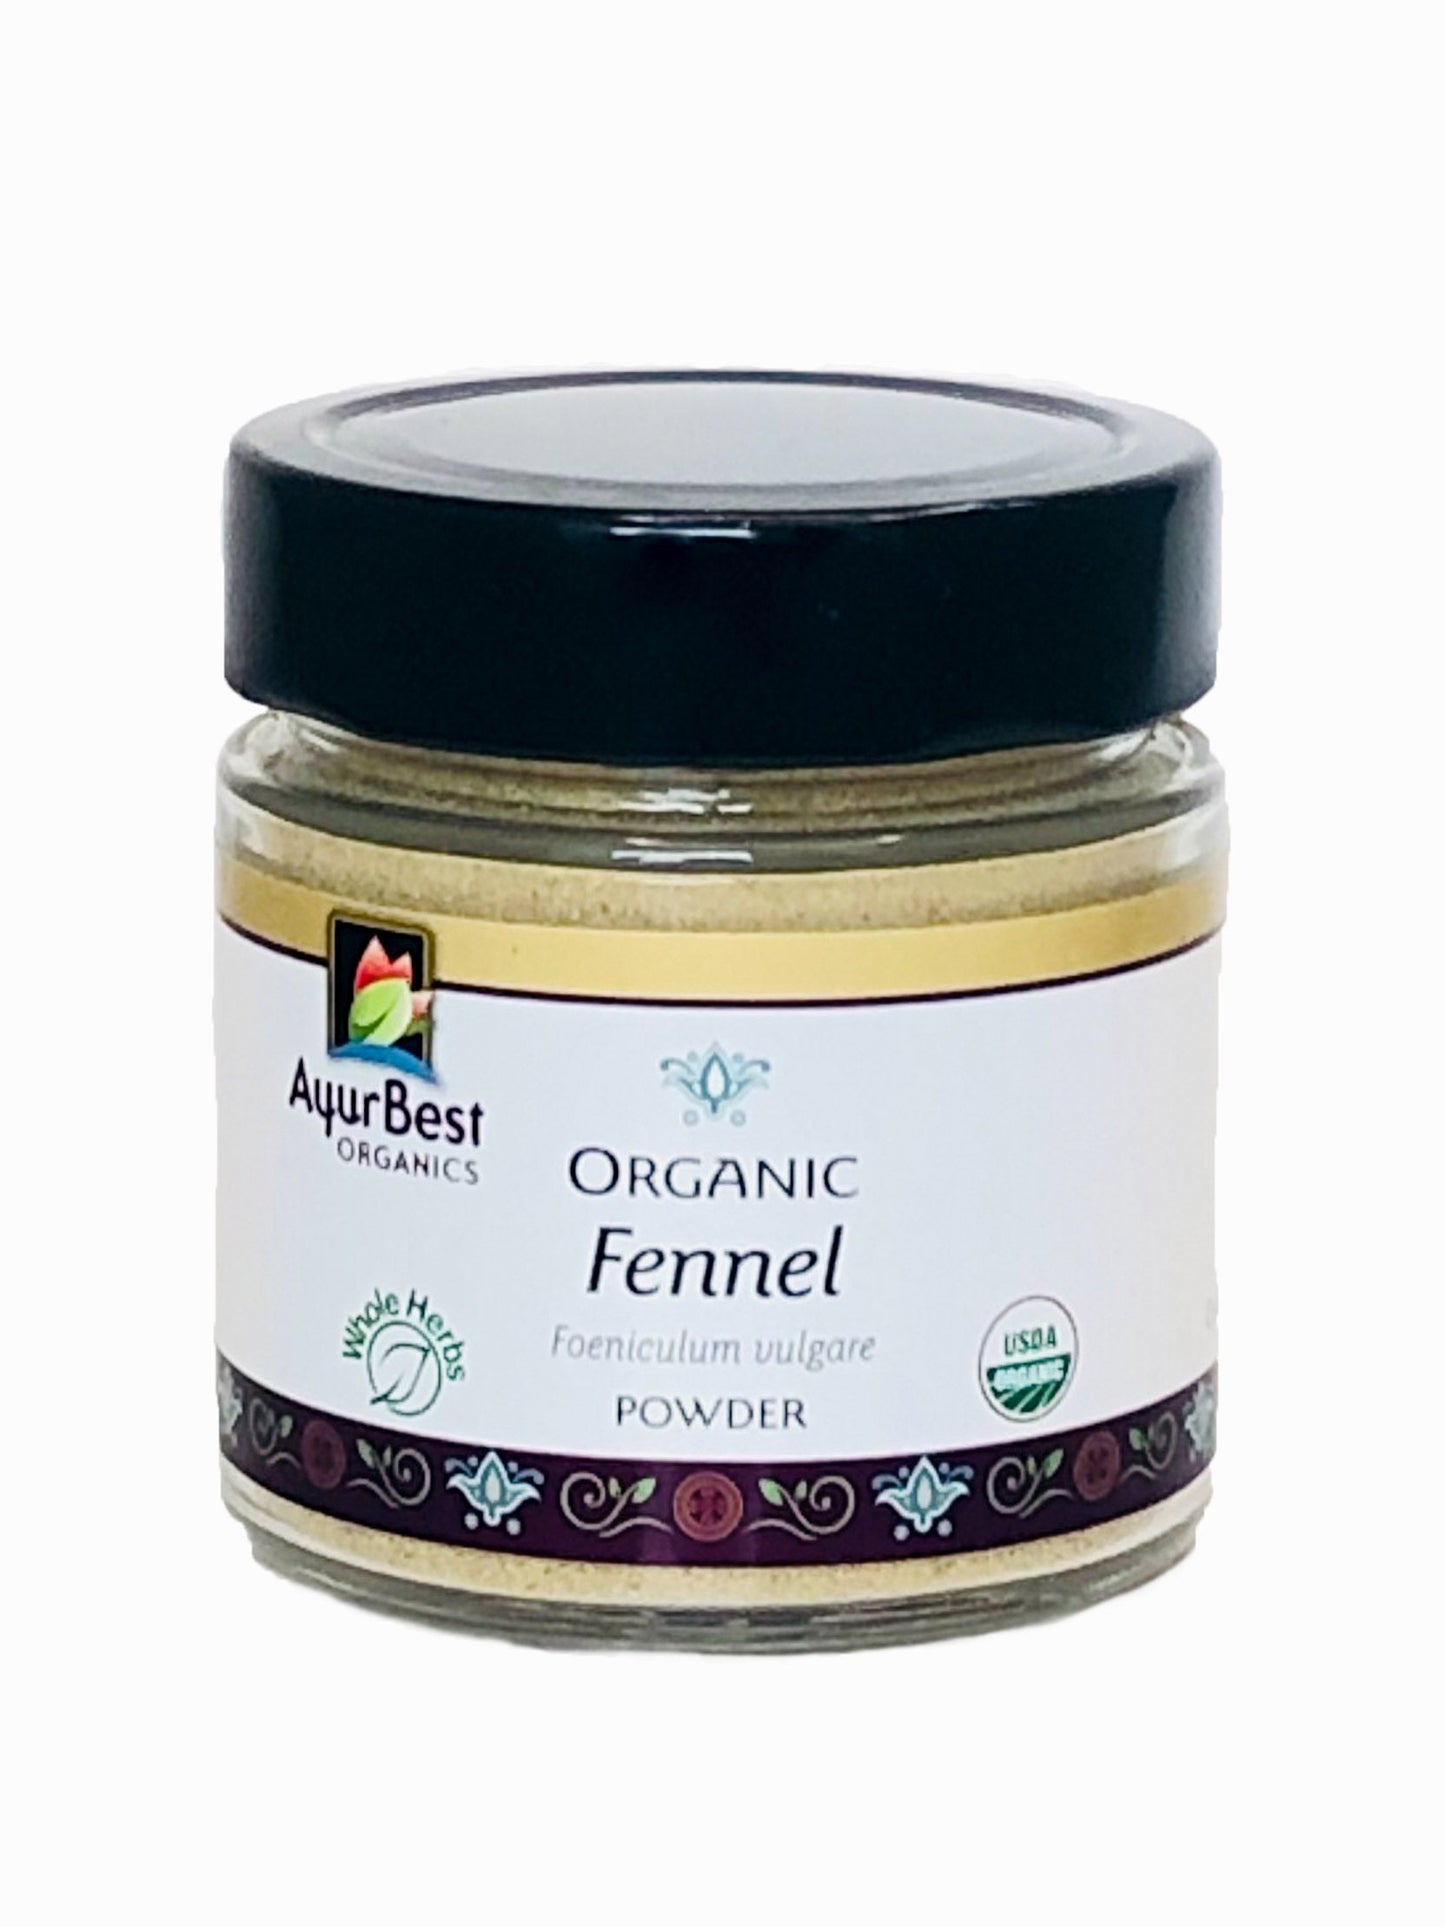 Wholesale Spices & Herbs - Fennel Seed Powder, Organic 3.0oz(87.3g) Jar